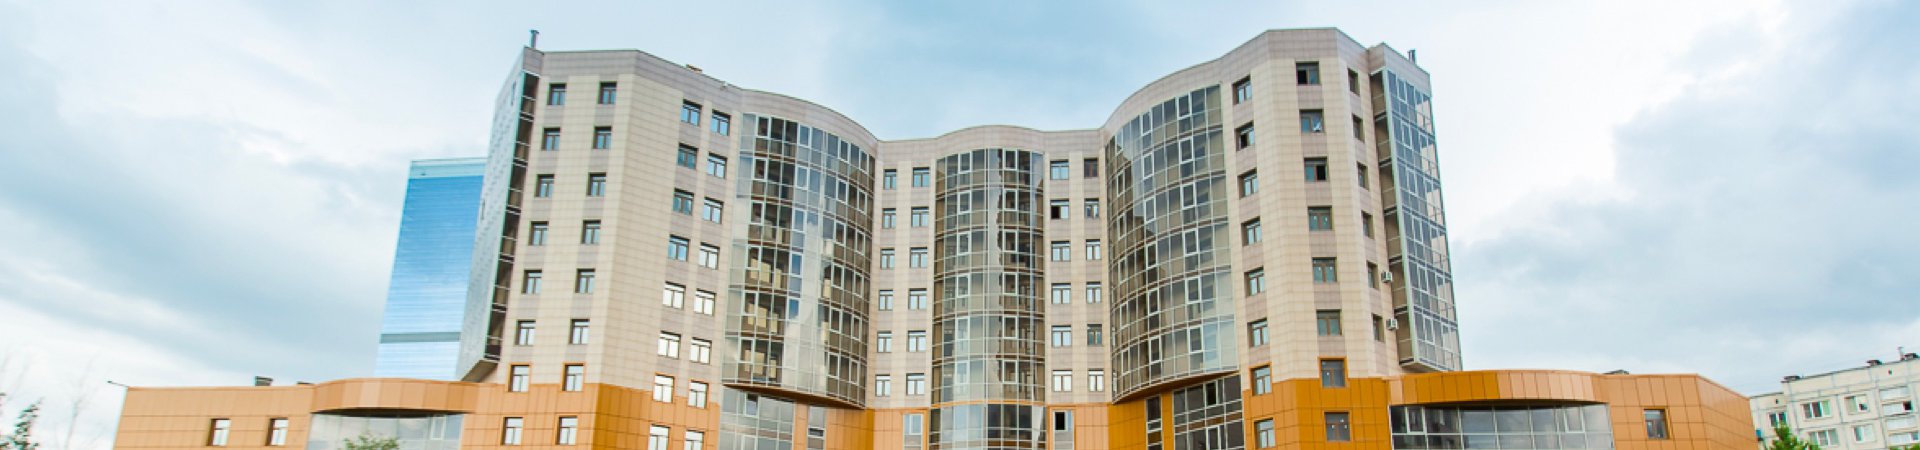 Апартаменты и спортивный комплекс, Краснопутиловская д.111